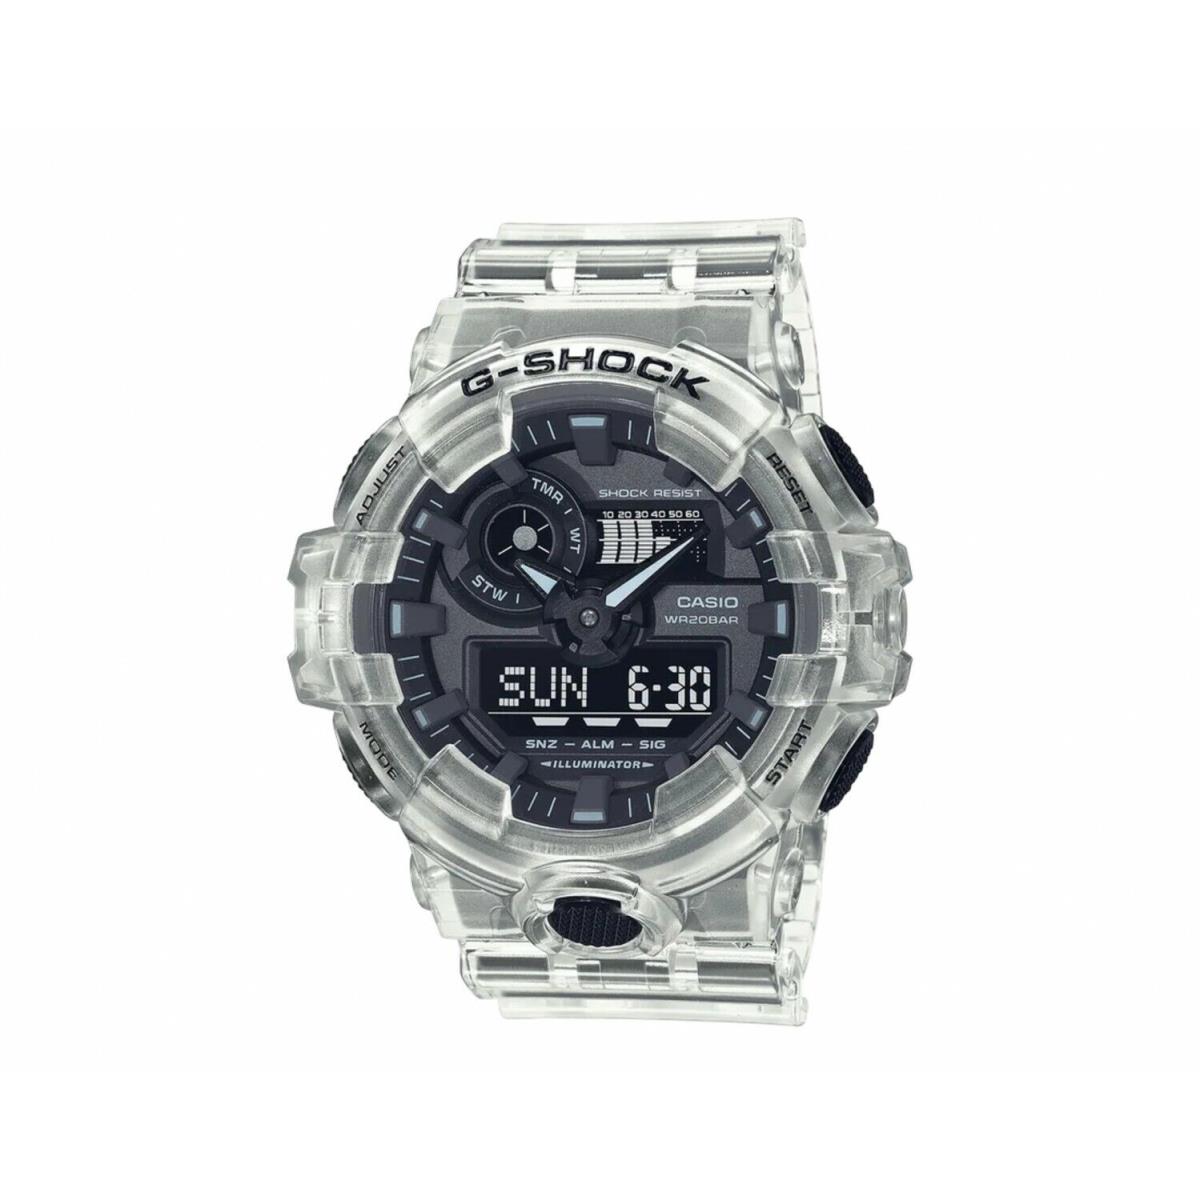 Casio G-shock Analog/digital Watch Transparent Resin GA-700SKE-7A / GA700SKE-7A